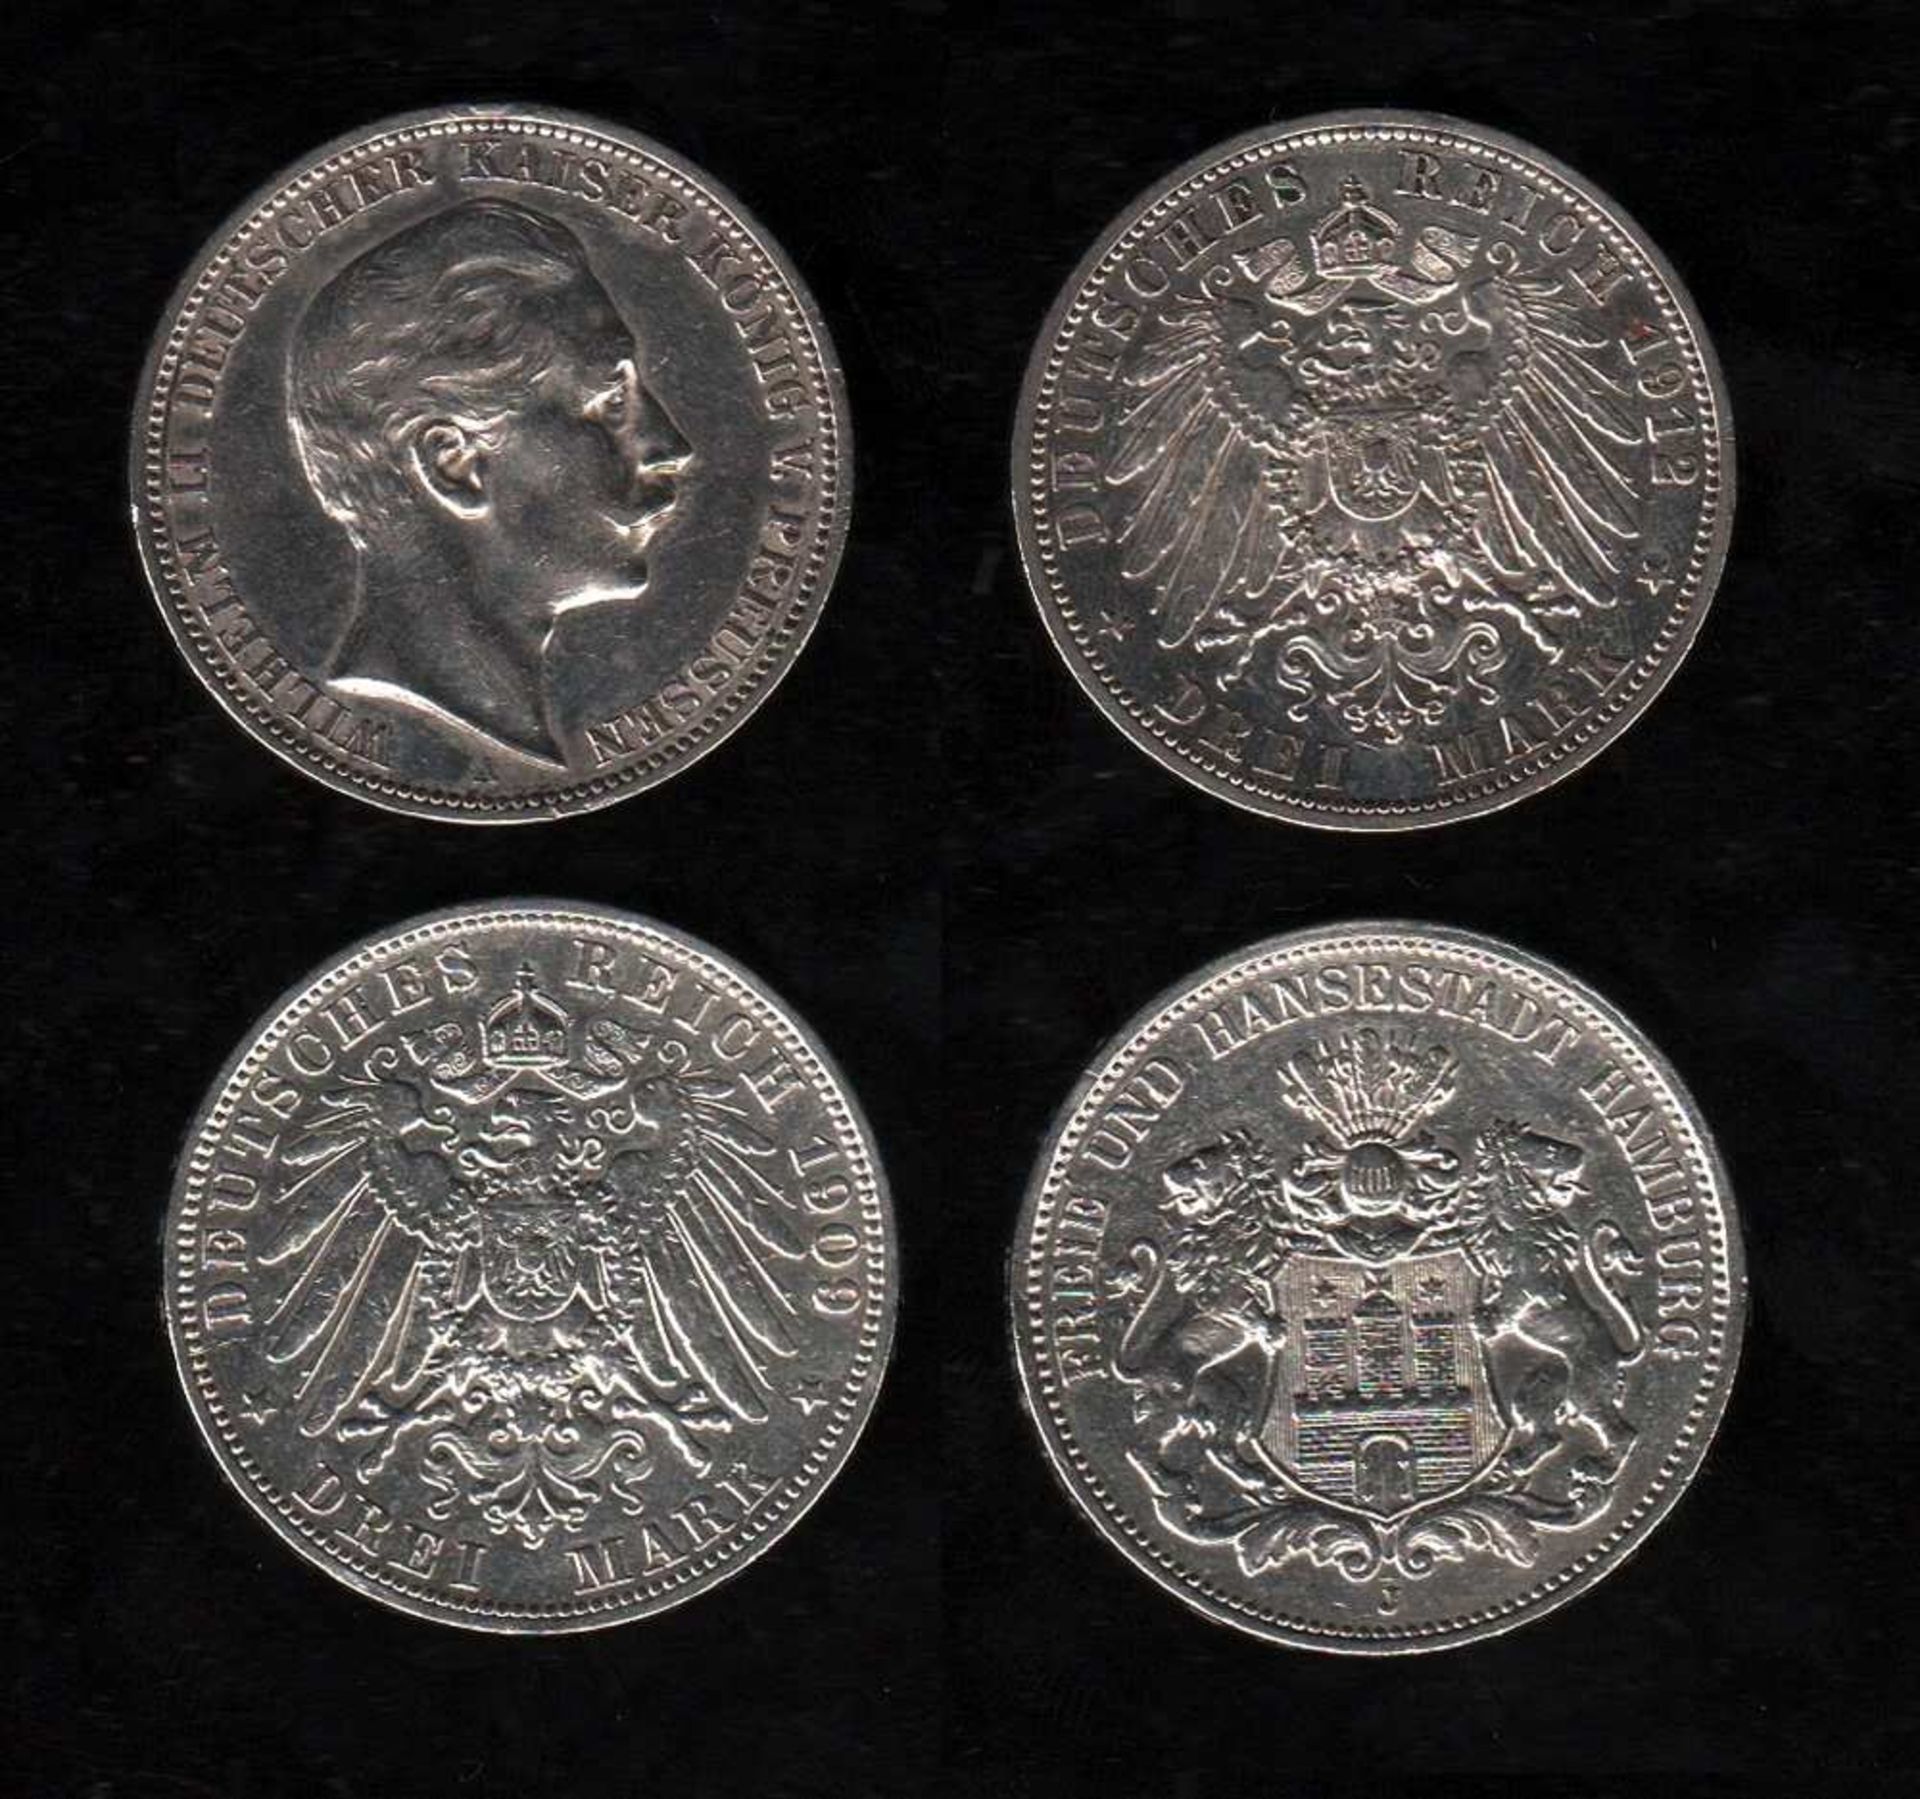 # Deutsches Reich. Silbermünze. 3 Mark. Freie und Hansestadt Hamburg. J 1909. Vorderseite: Wappen